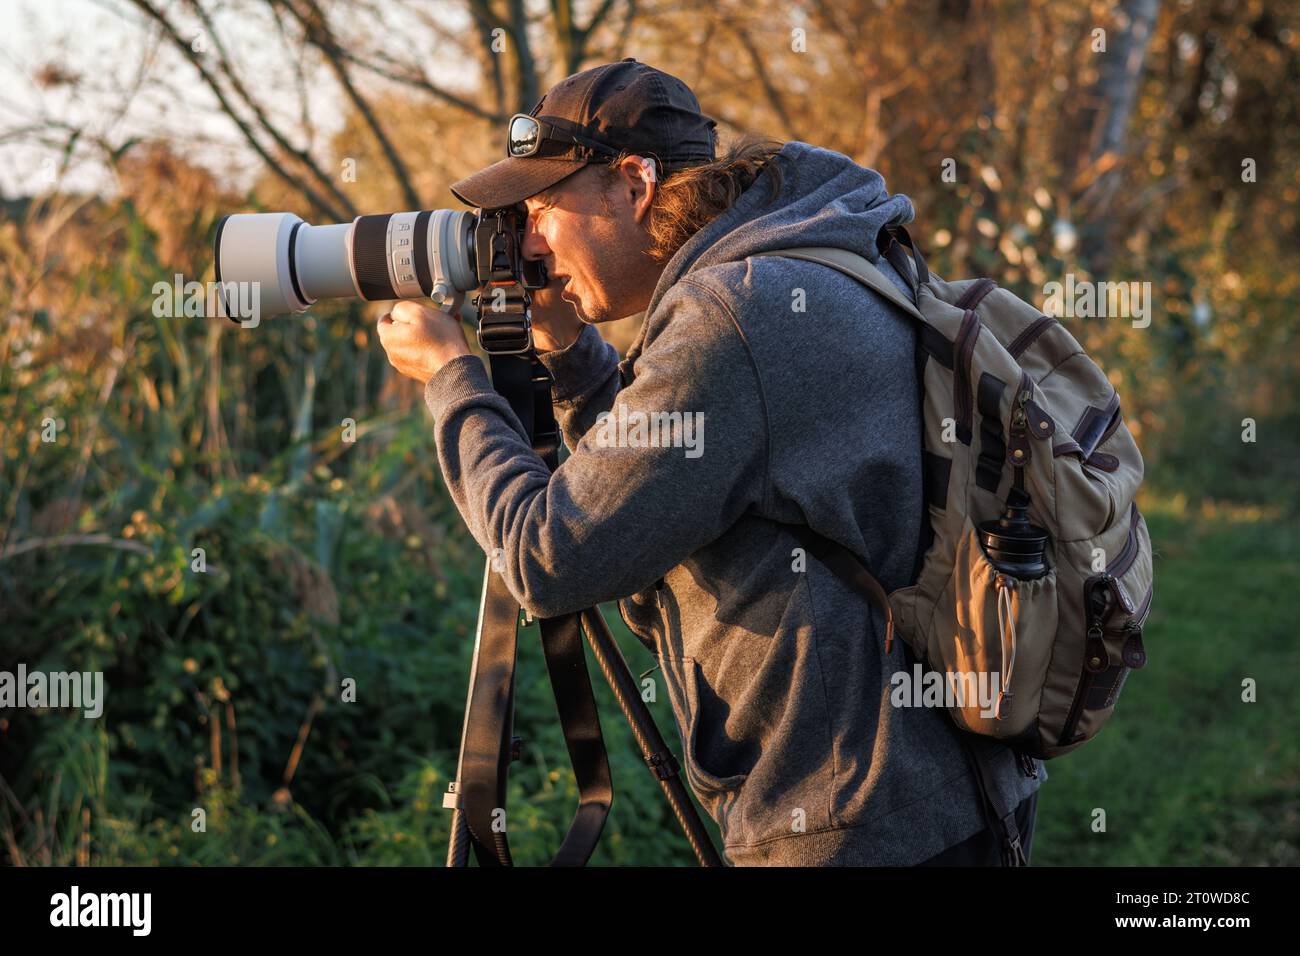 Homme photographe avec appareil photo sur trépied prend la photo de la nature dans la forêt Banque D'Images